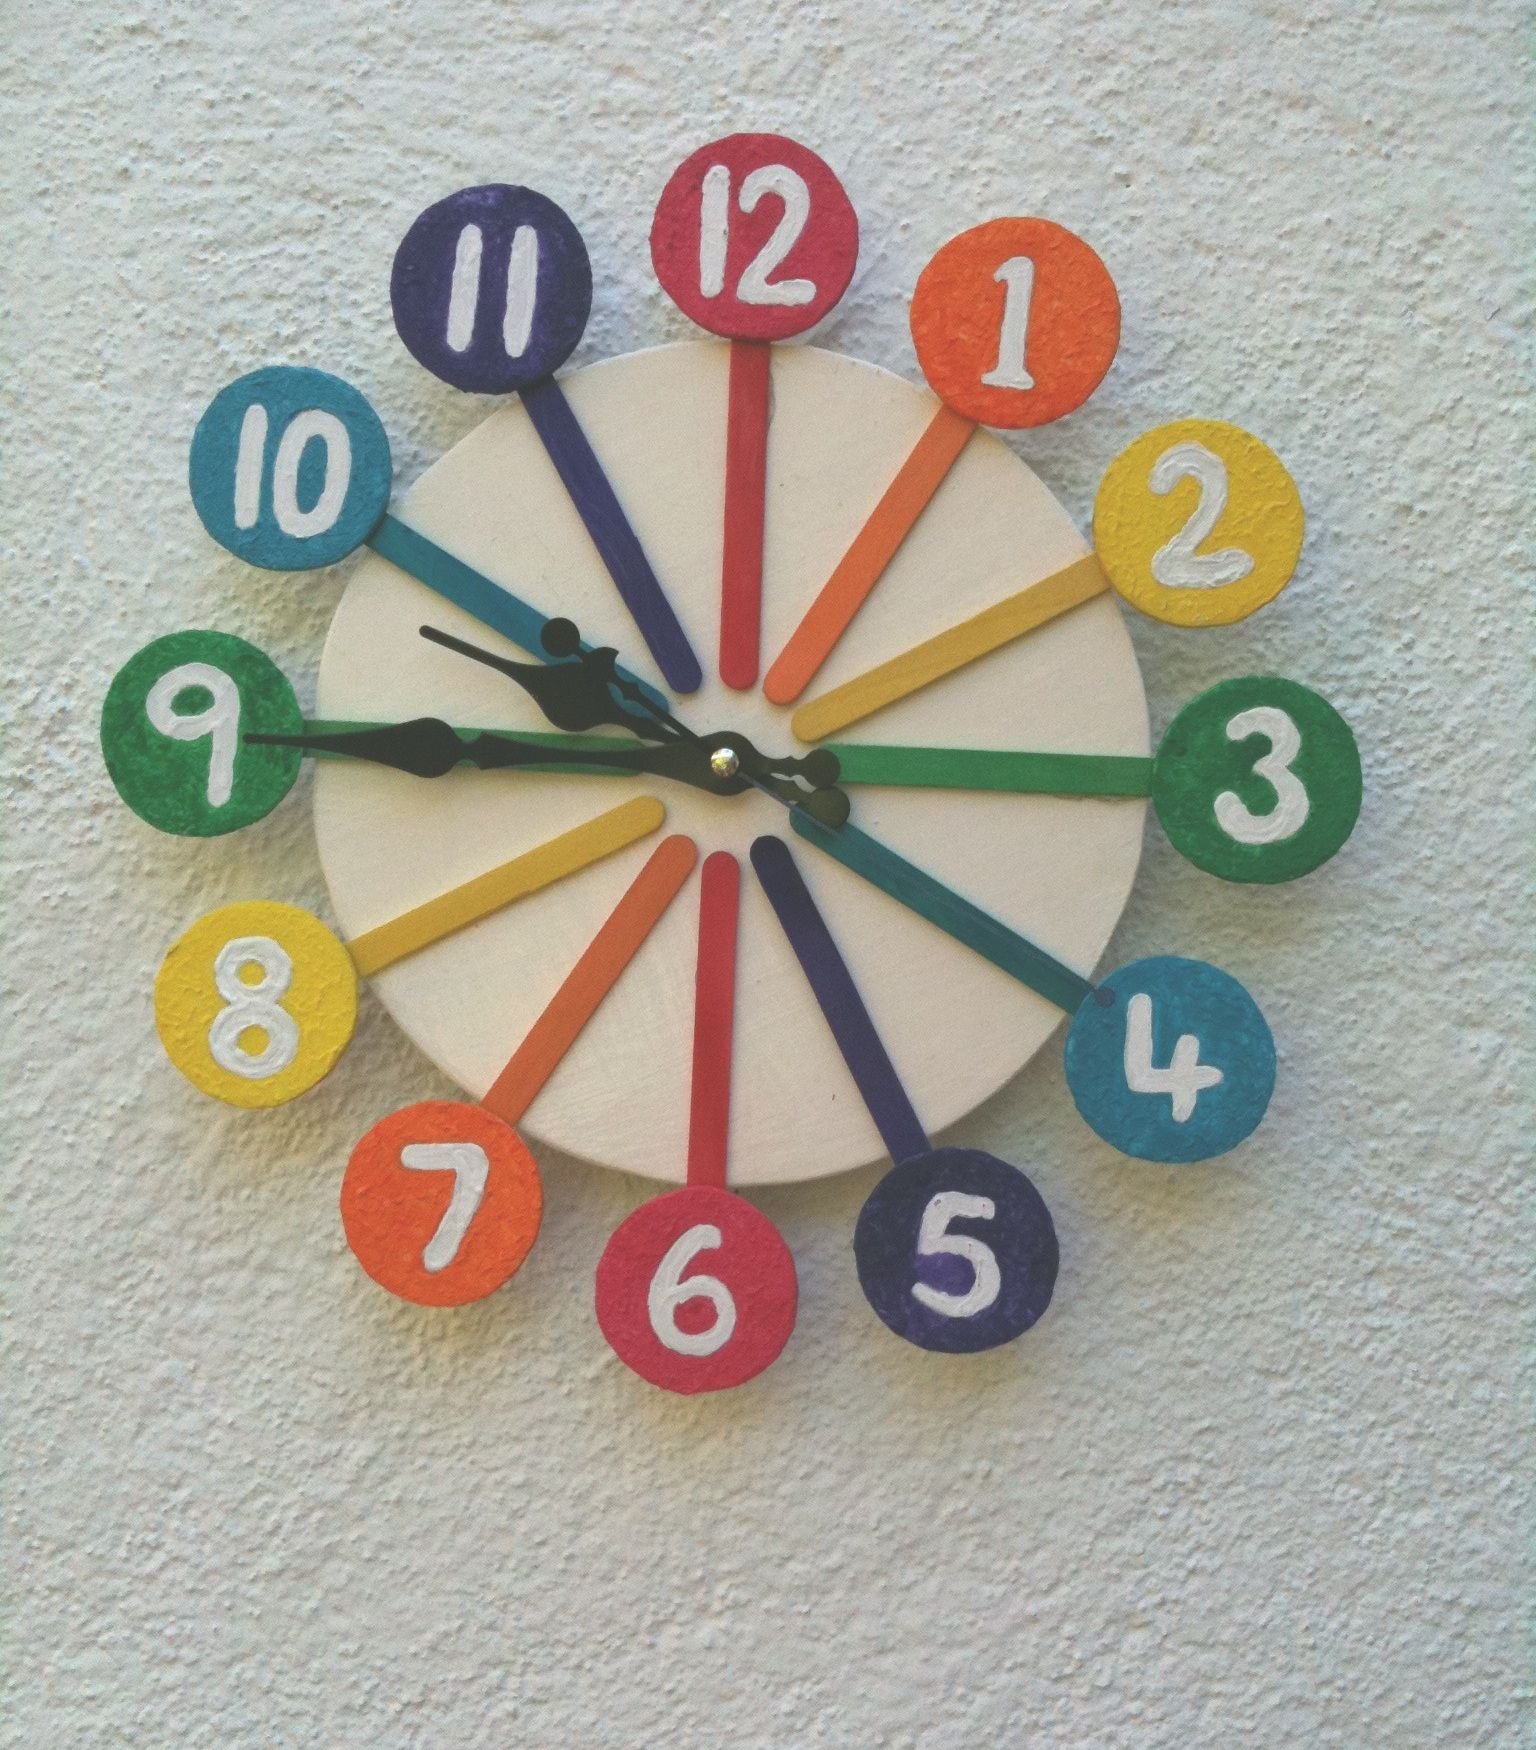 Как сделать часы работы в тг. Часы из картона. Часы из картона для детей. Часы из картона в школу. Часы из картона в садик.